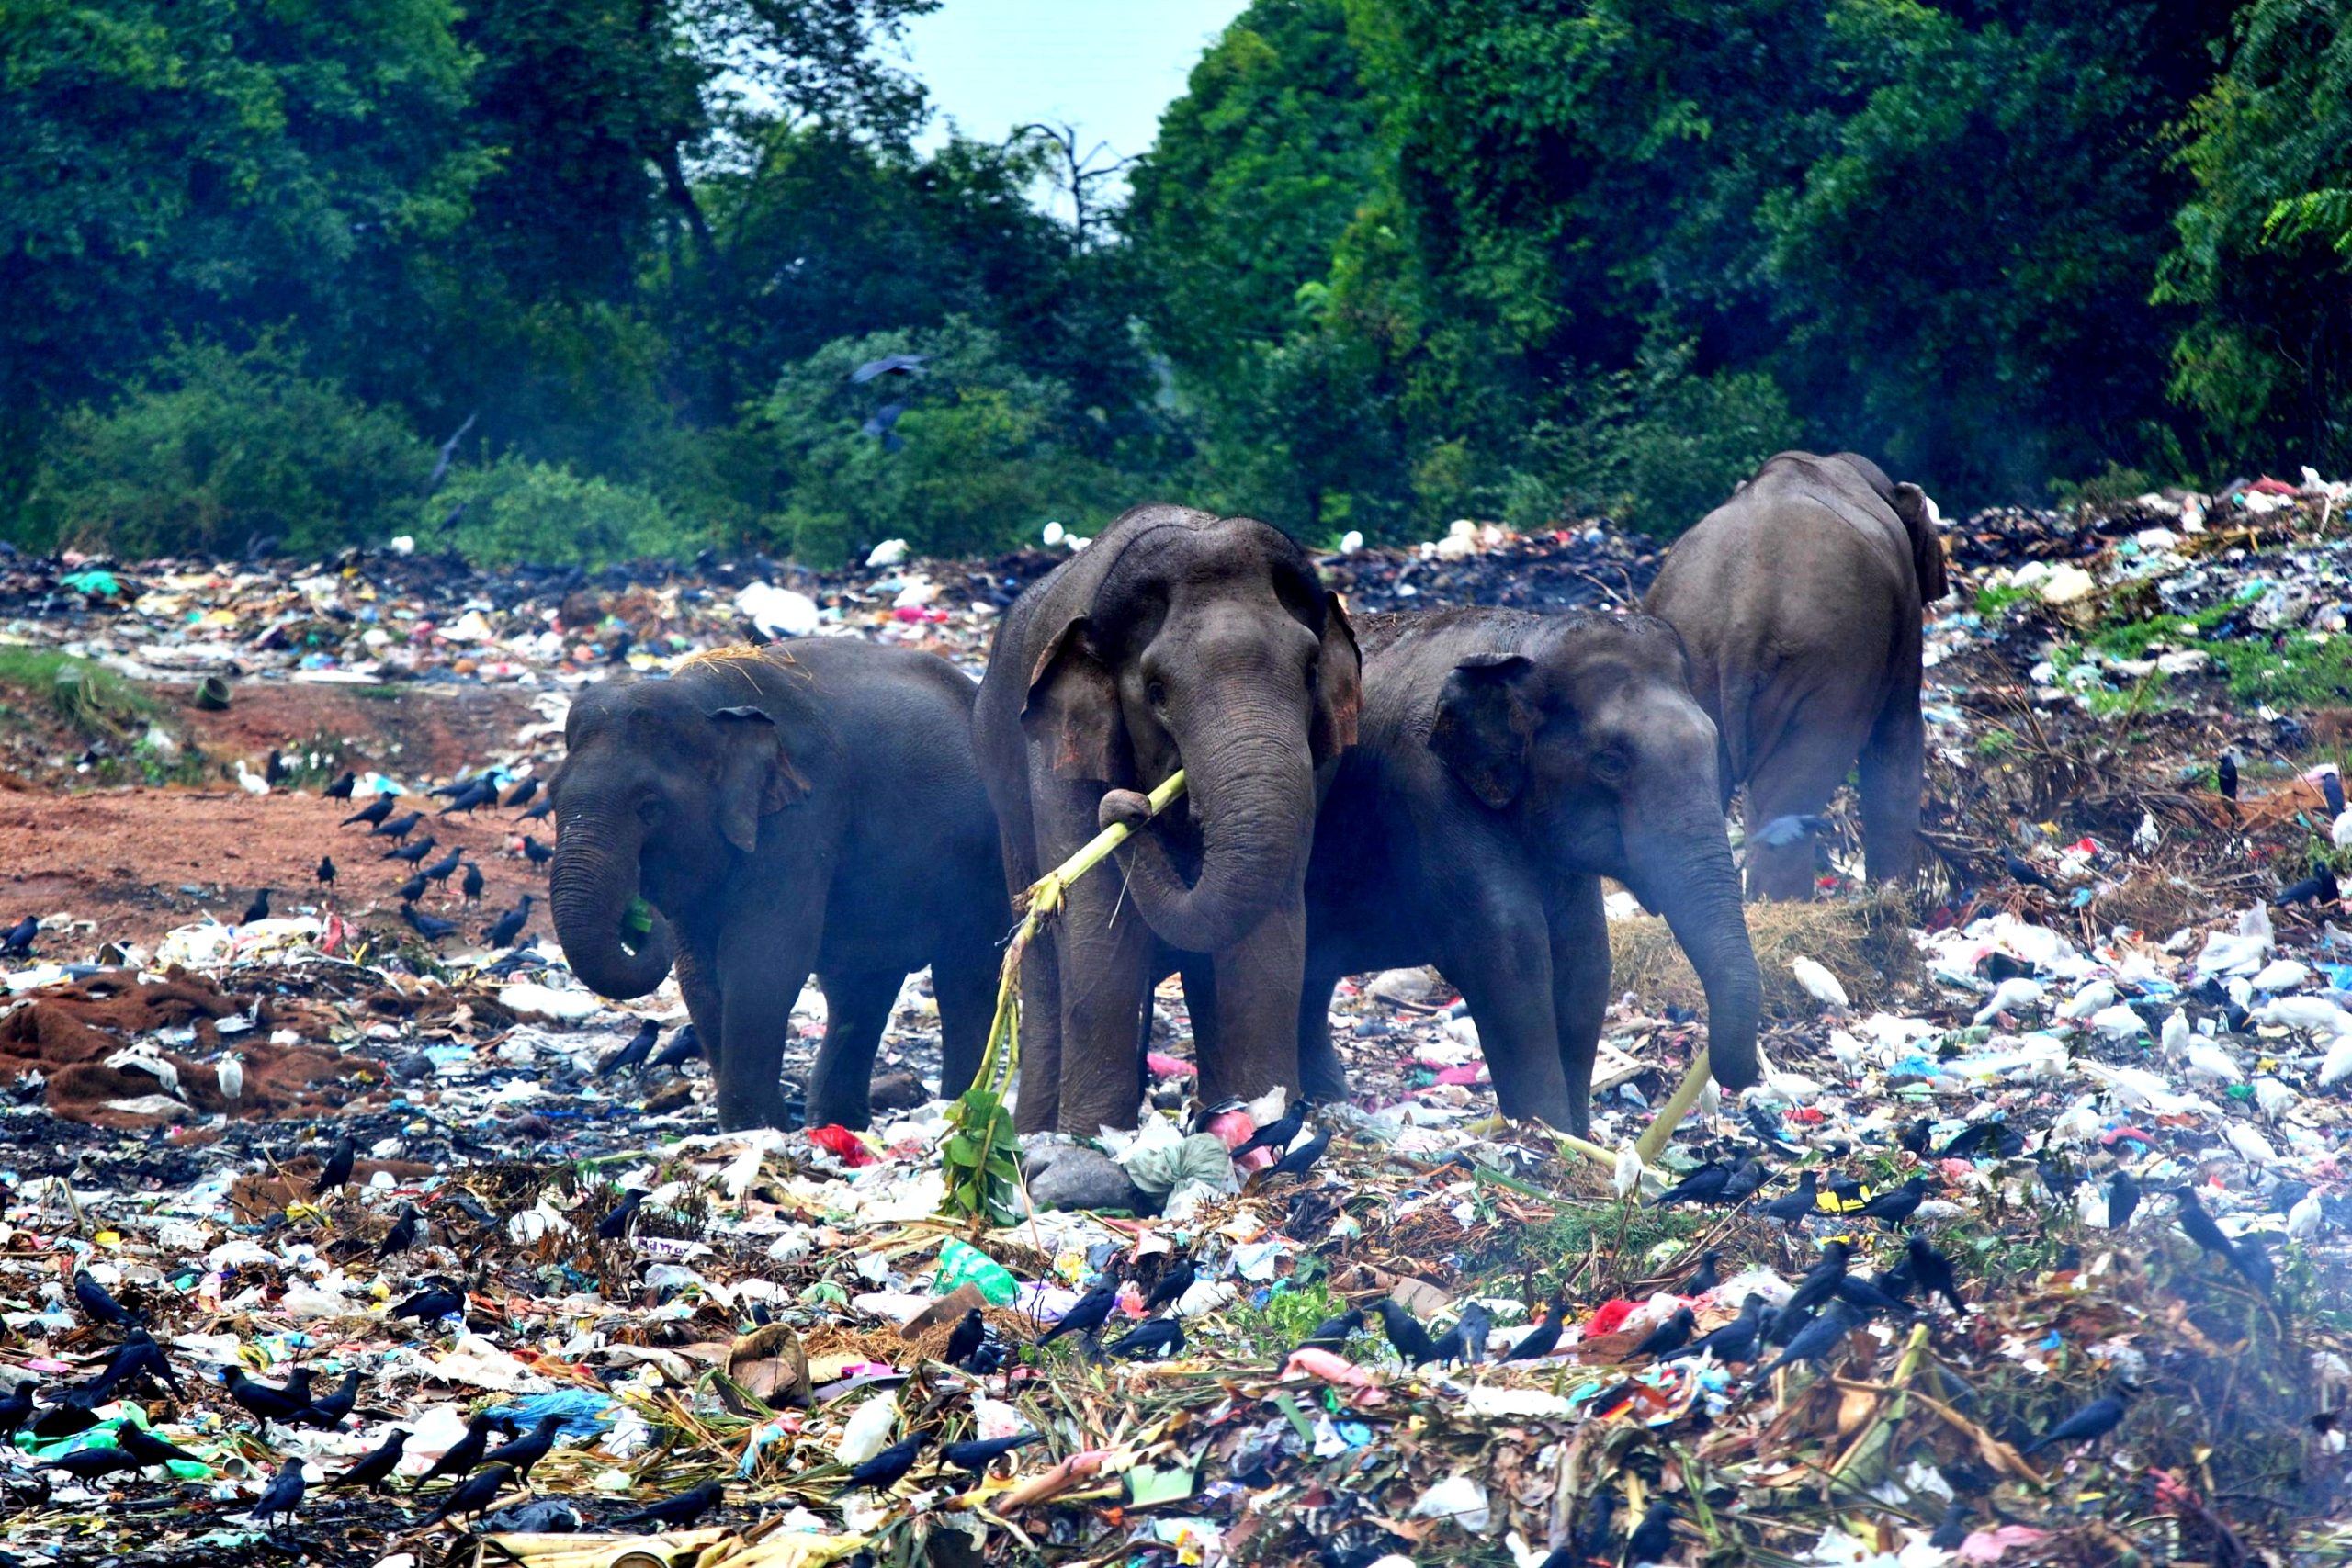 Elefanti alla ricerca di cibo in discarica, immagini terrificanti